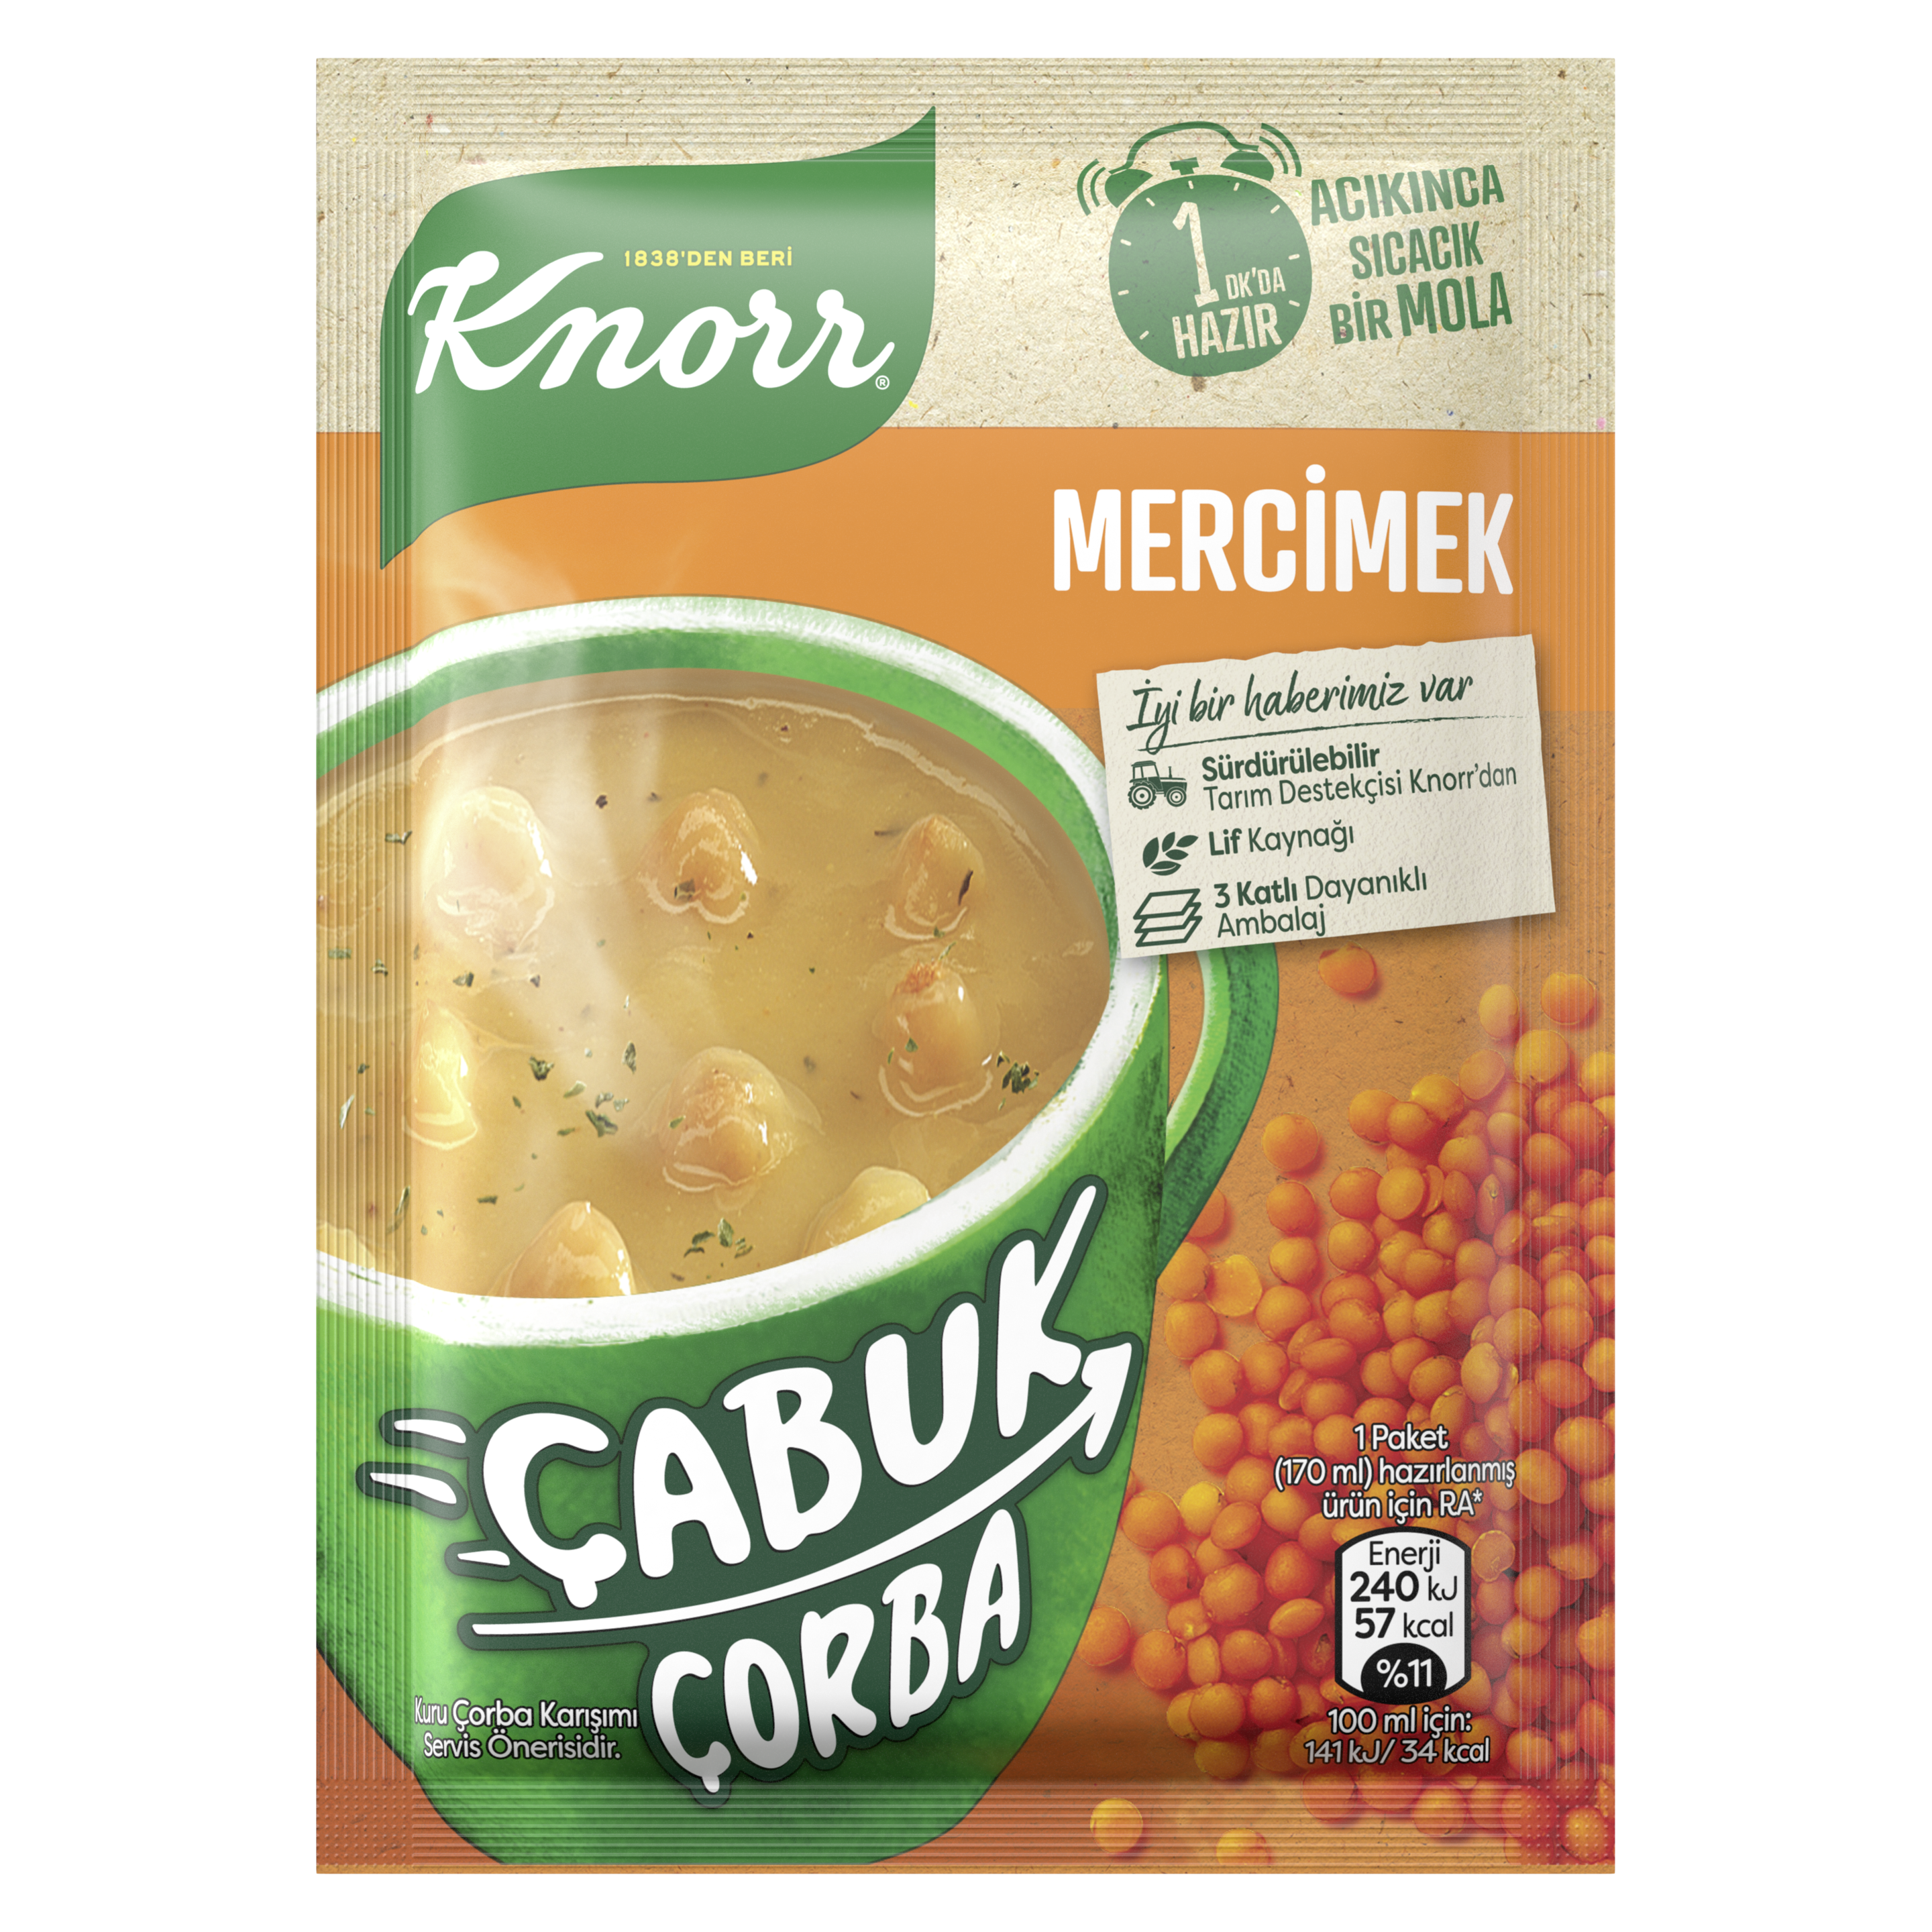 Knorr Mercimek Çorbası